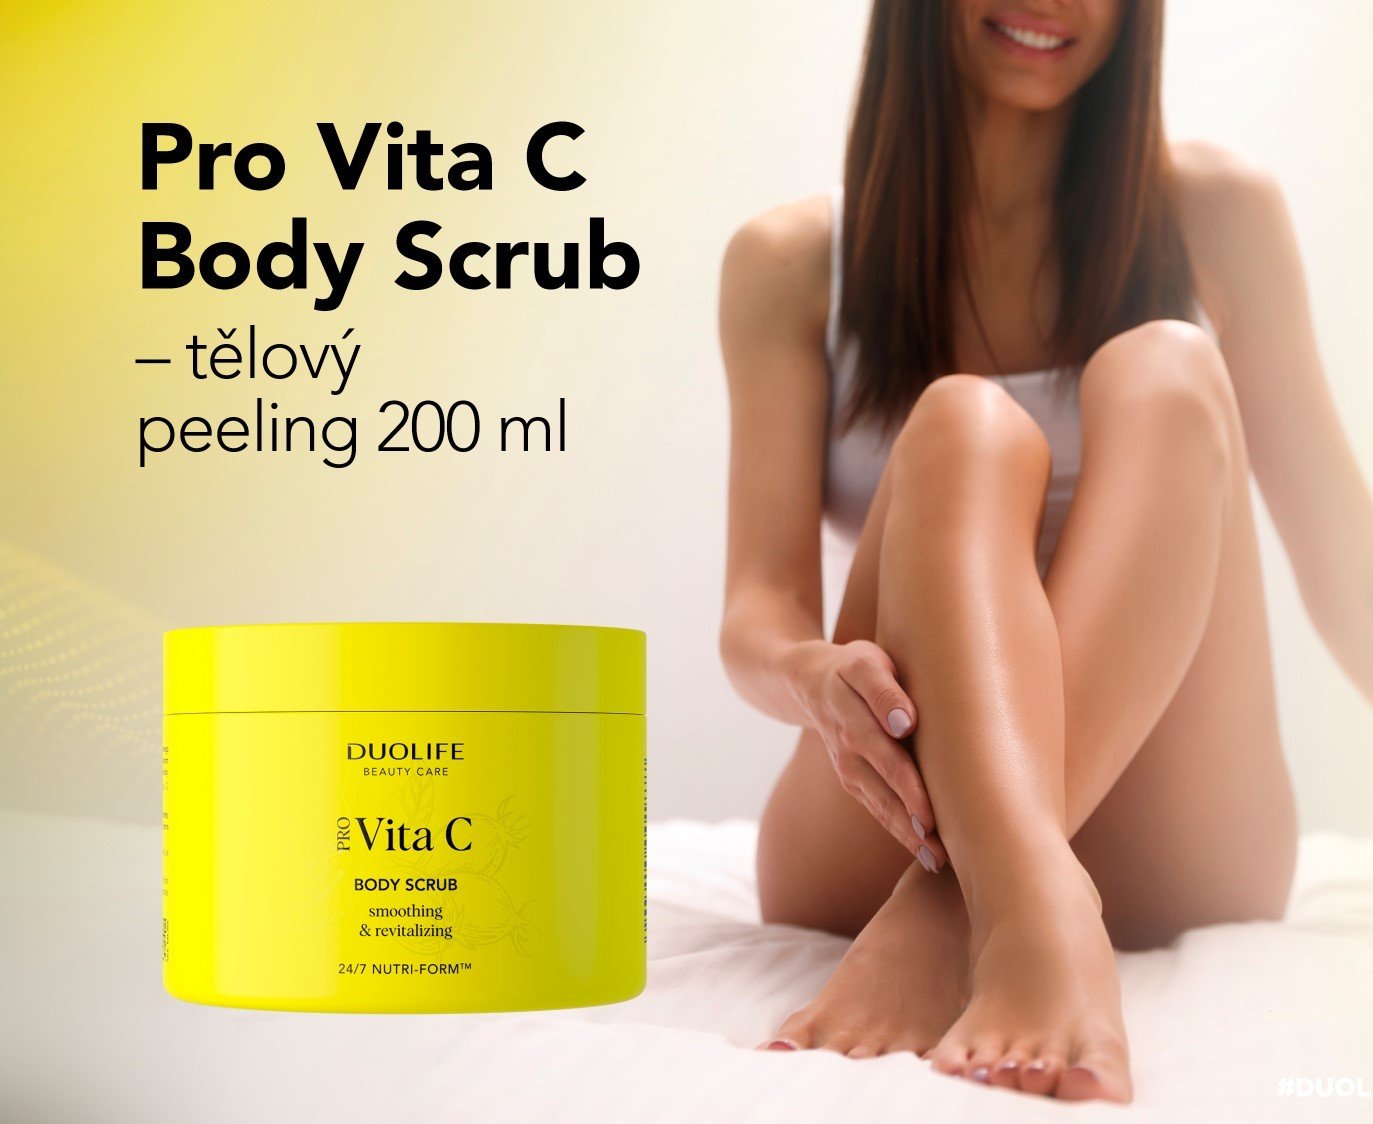 Pro Vita C Body Scrub | DUOLIFE.cz